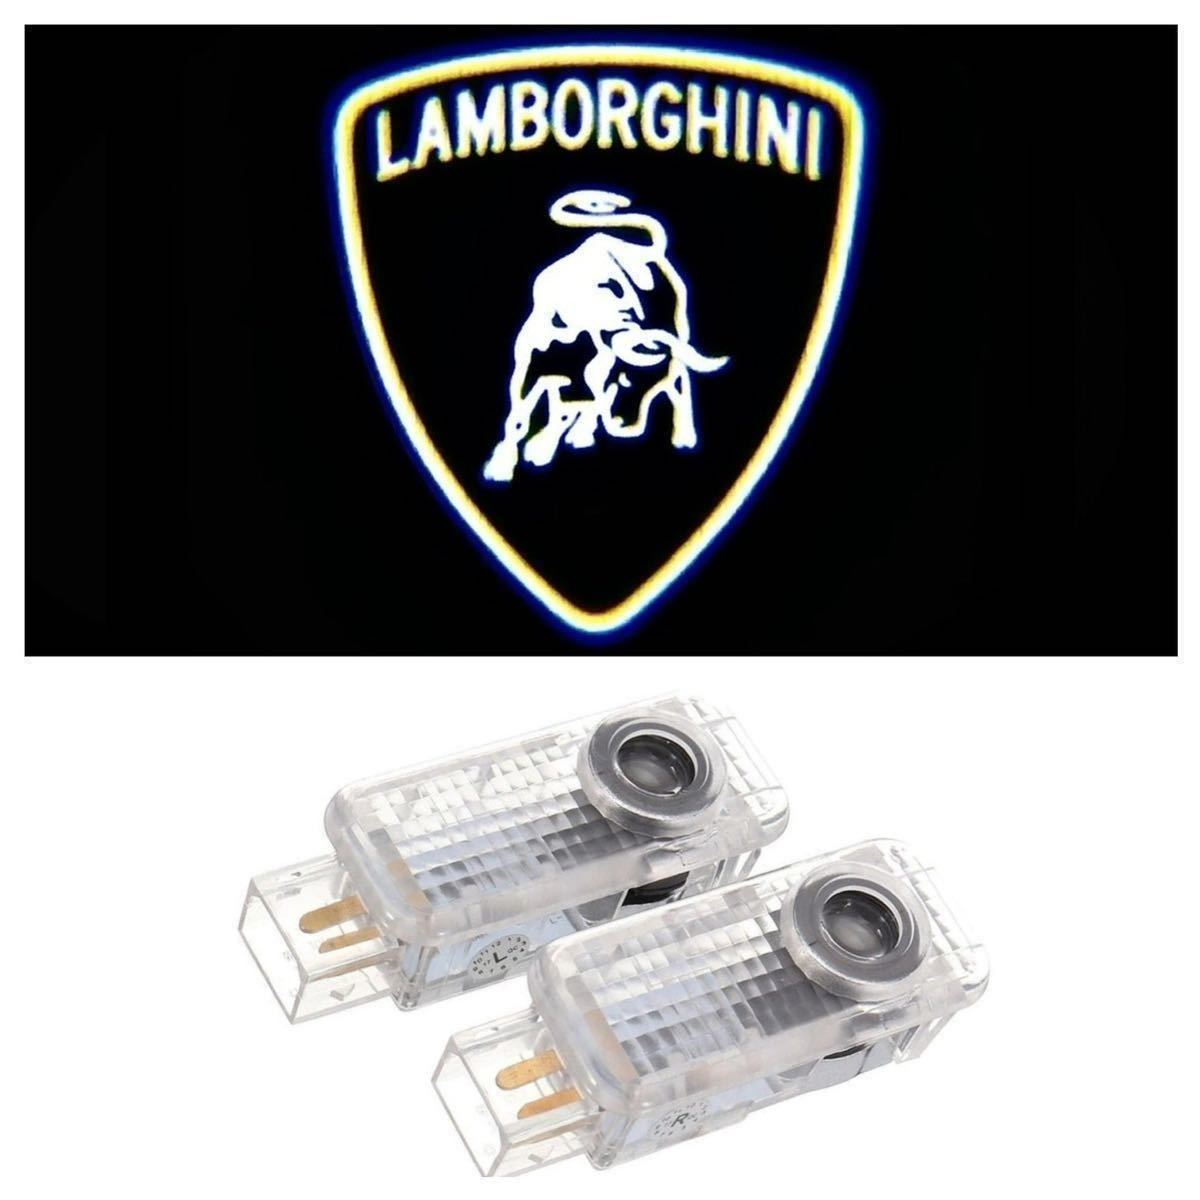 Lamborghini ロゴ LED プロジェクター カーテシランプ ガヤルド アベンタドール ウルス ウラカン ランボルギーニ ドア ライト マーク